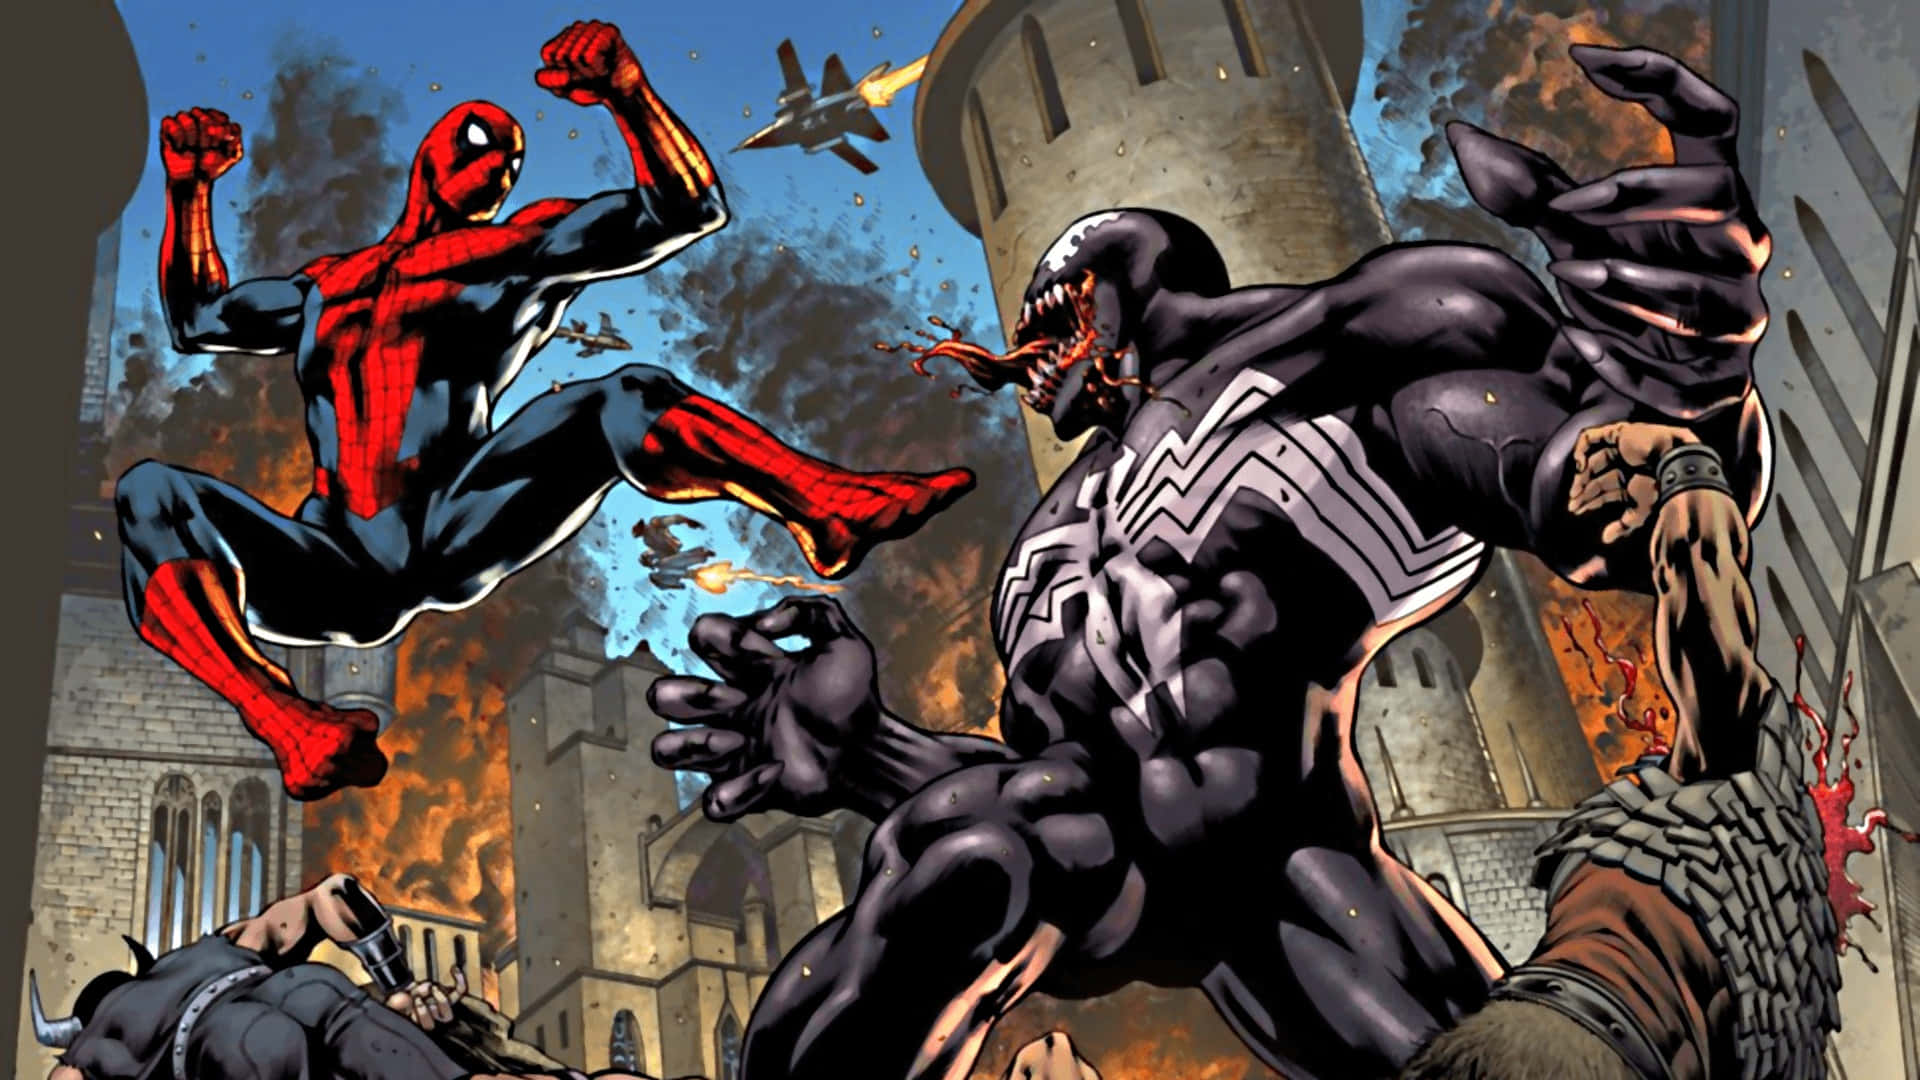 Venom Comic Book Cover Art Wallpaper